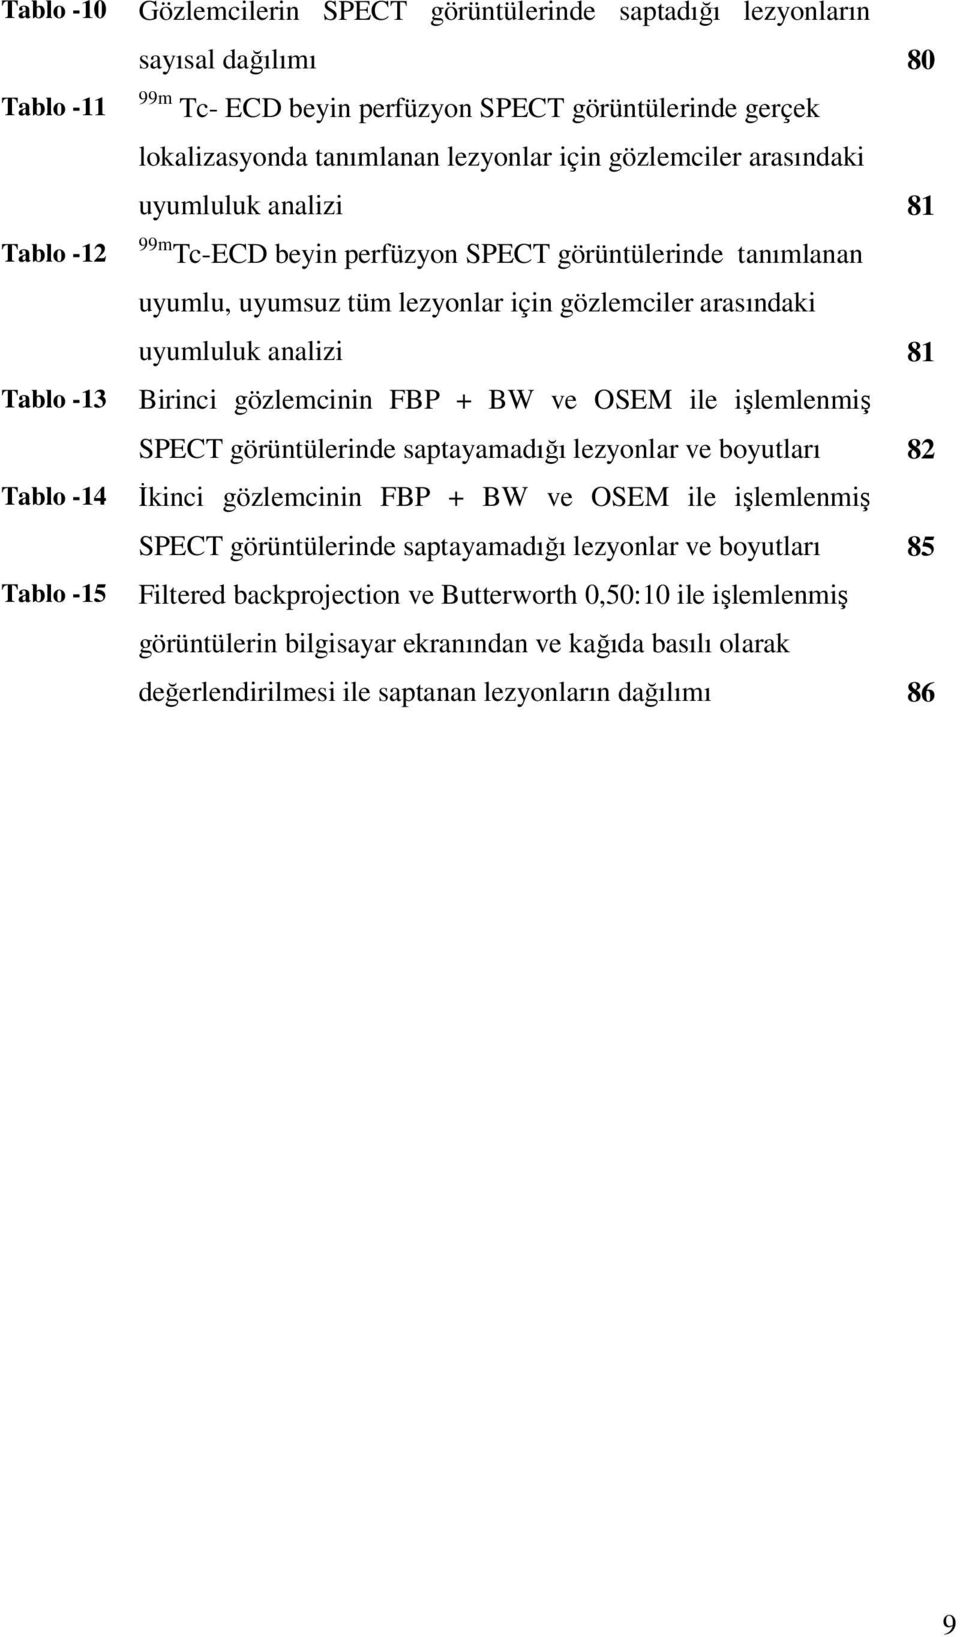 arasındaki uyumluluk analizi 81 Birinci gözlemcinin FBP + BW ve OSEM ile işlemlenmiş SPECT görüntülerinde saptayamadığı lezyonlar ve boyutları 82 İkinci gözlemcinin FBP + BW ve OSEM ile işlemlenmiş